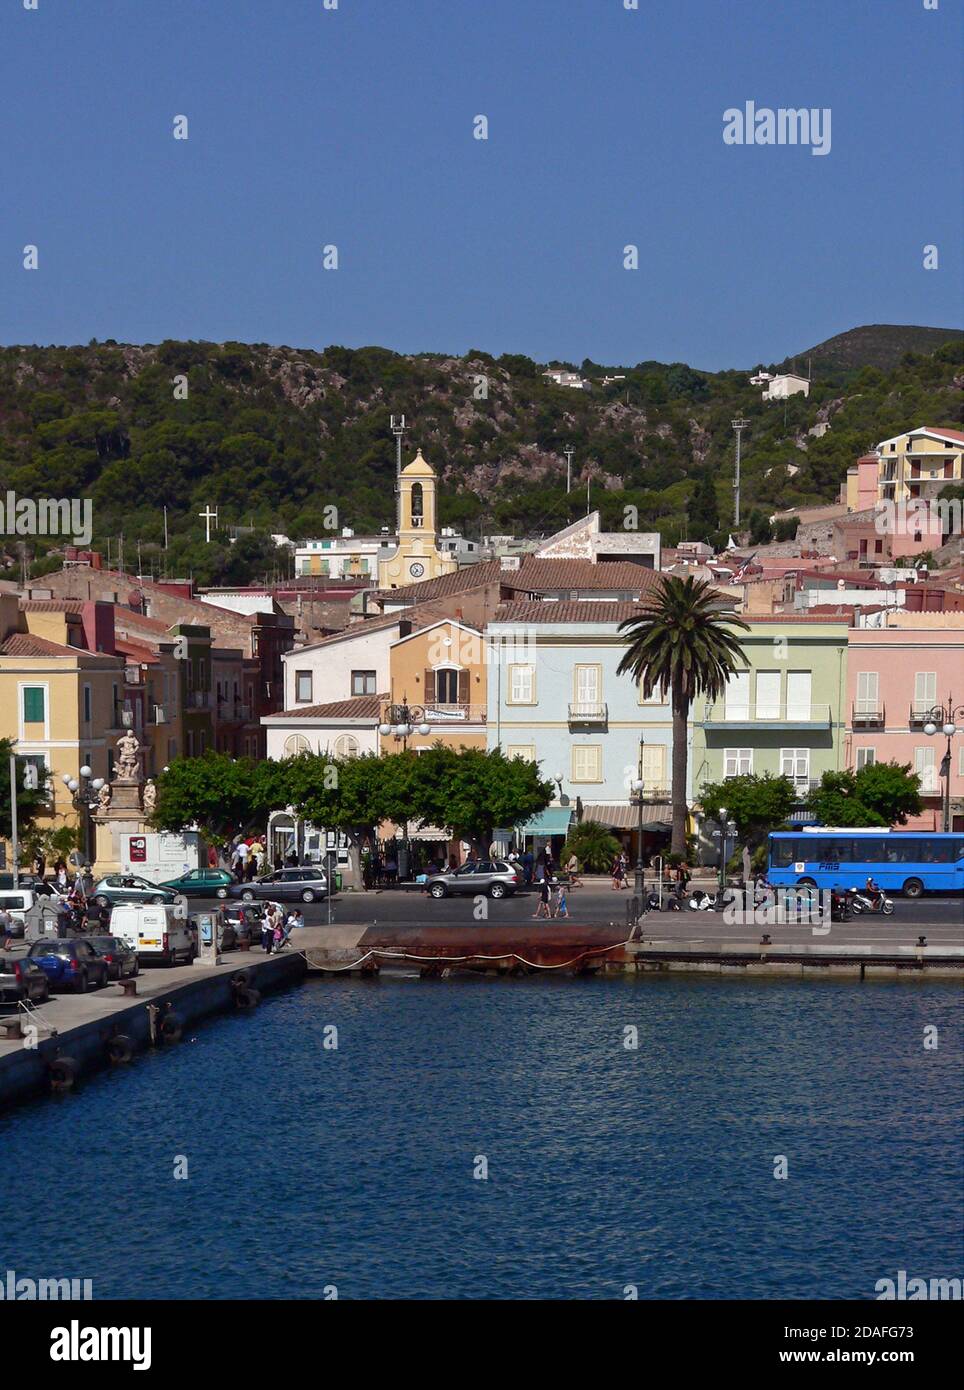 Carloforte, île de San Pietro, en Sardaigne, Italie Banque D'Images